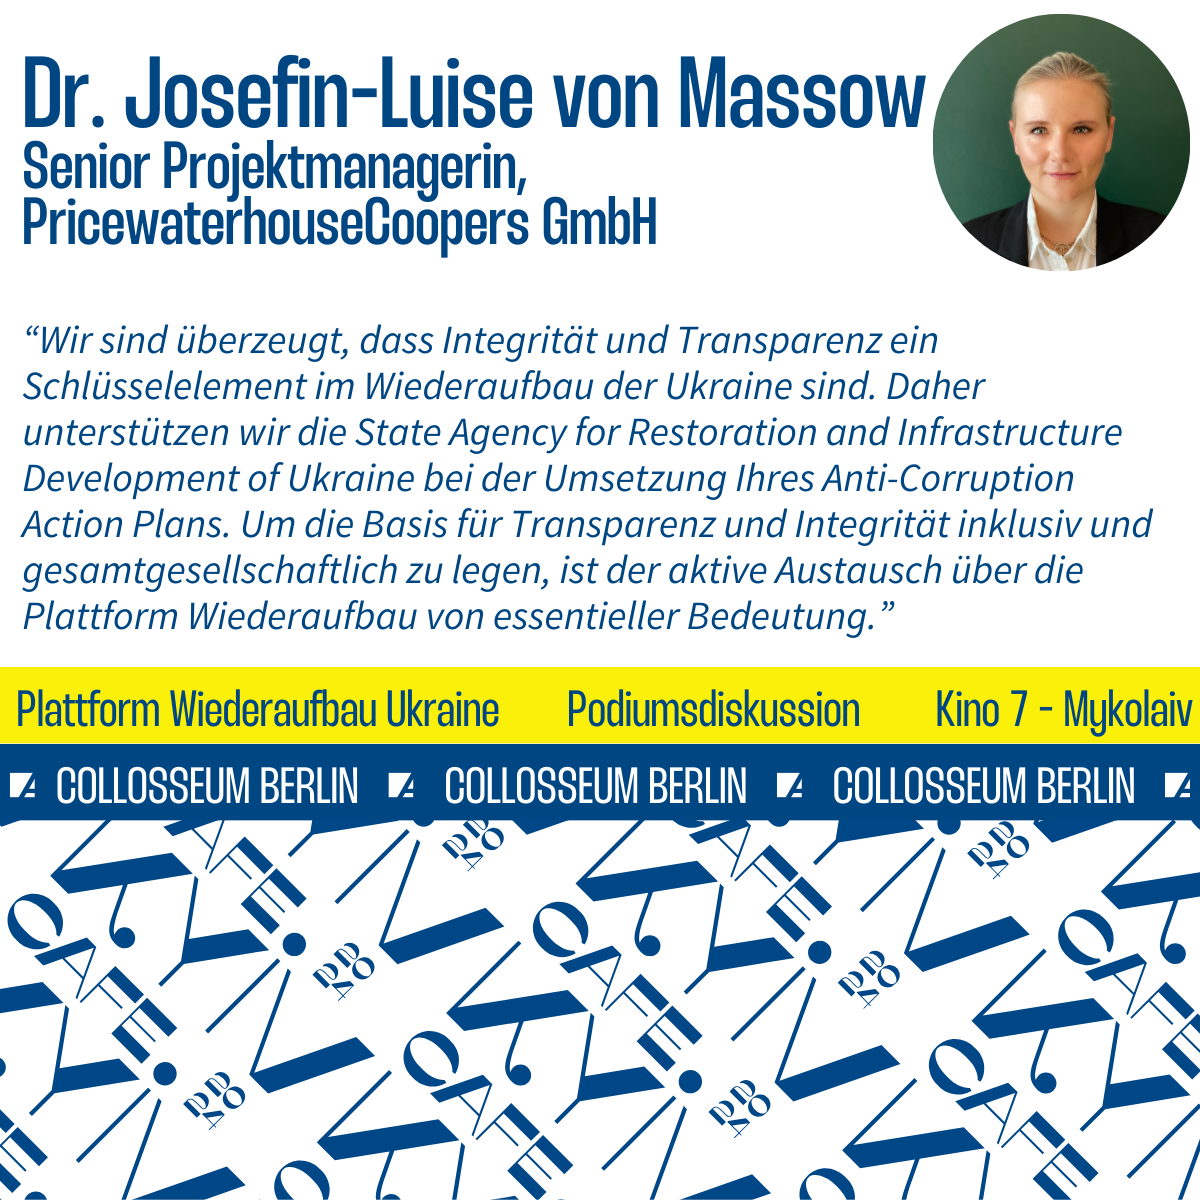 Statement von Dr. Josefin-Luise von Massow